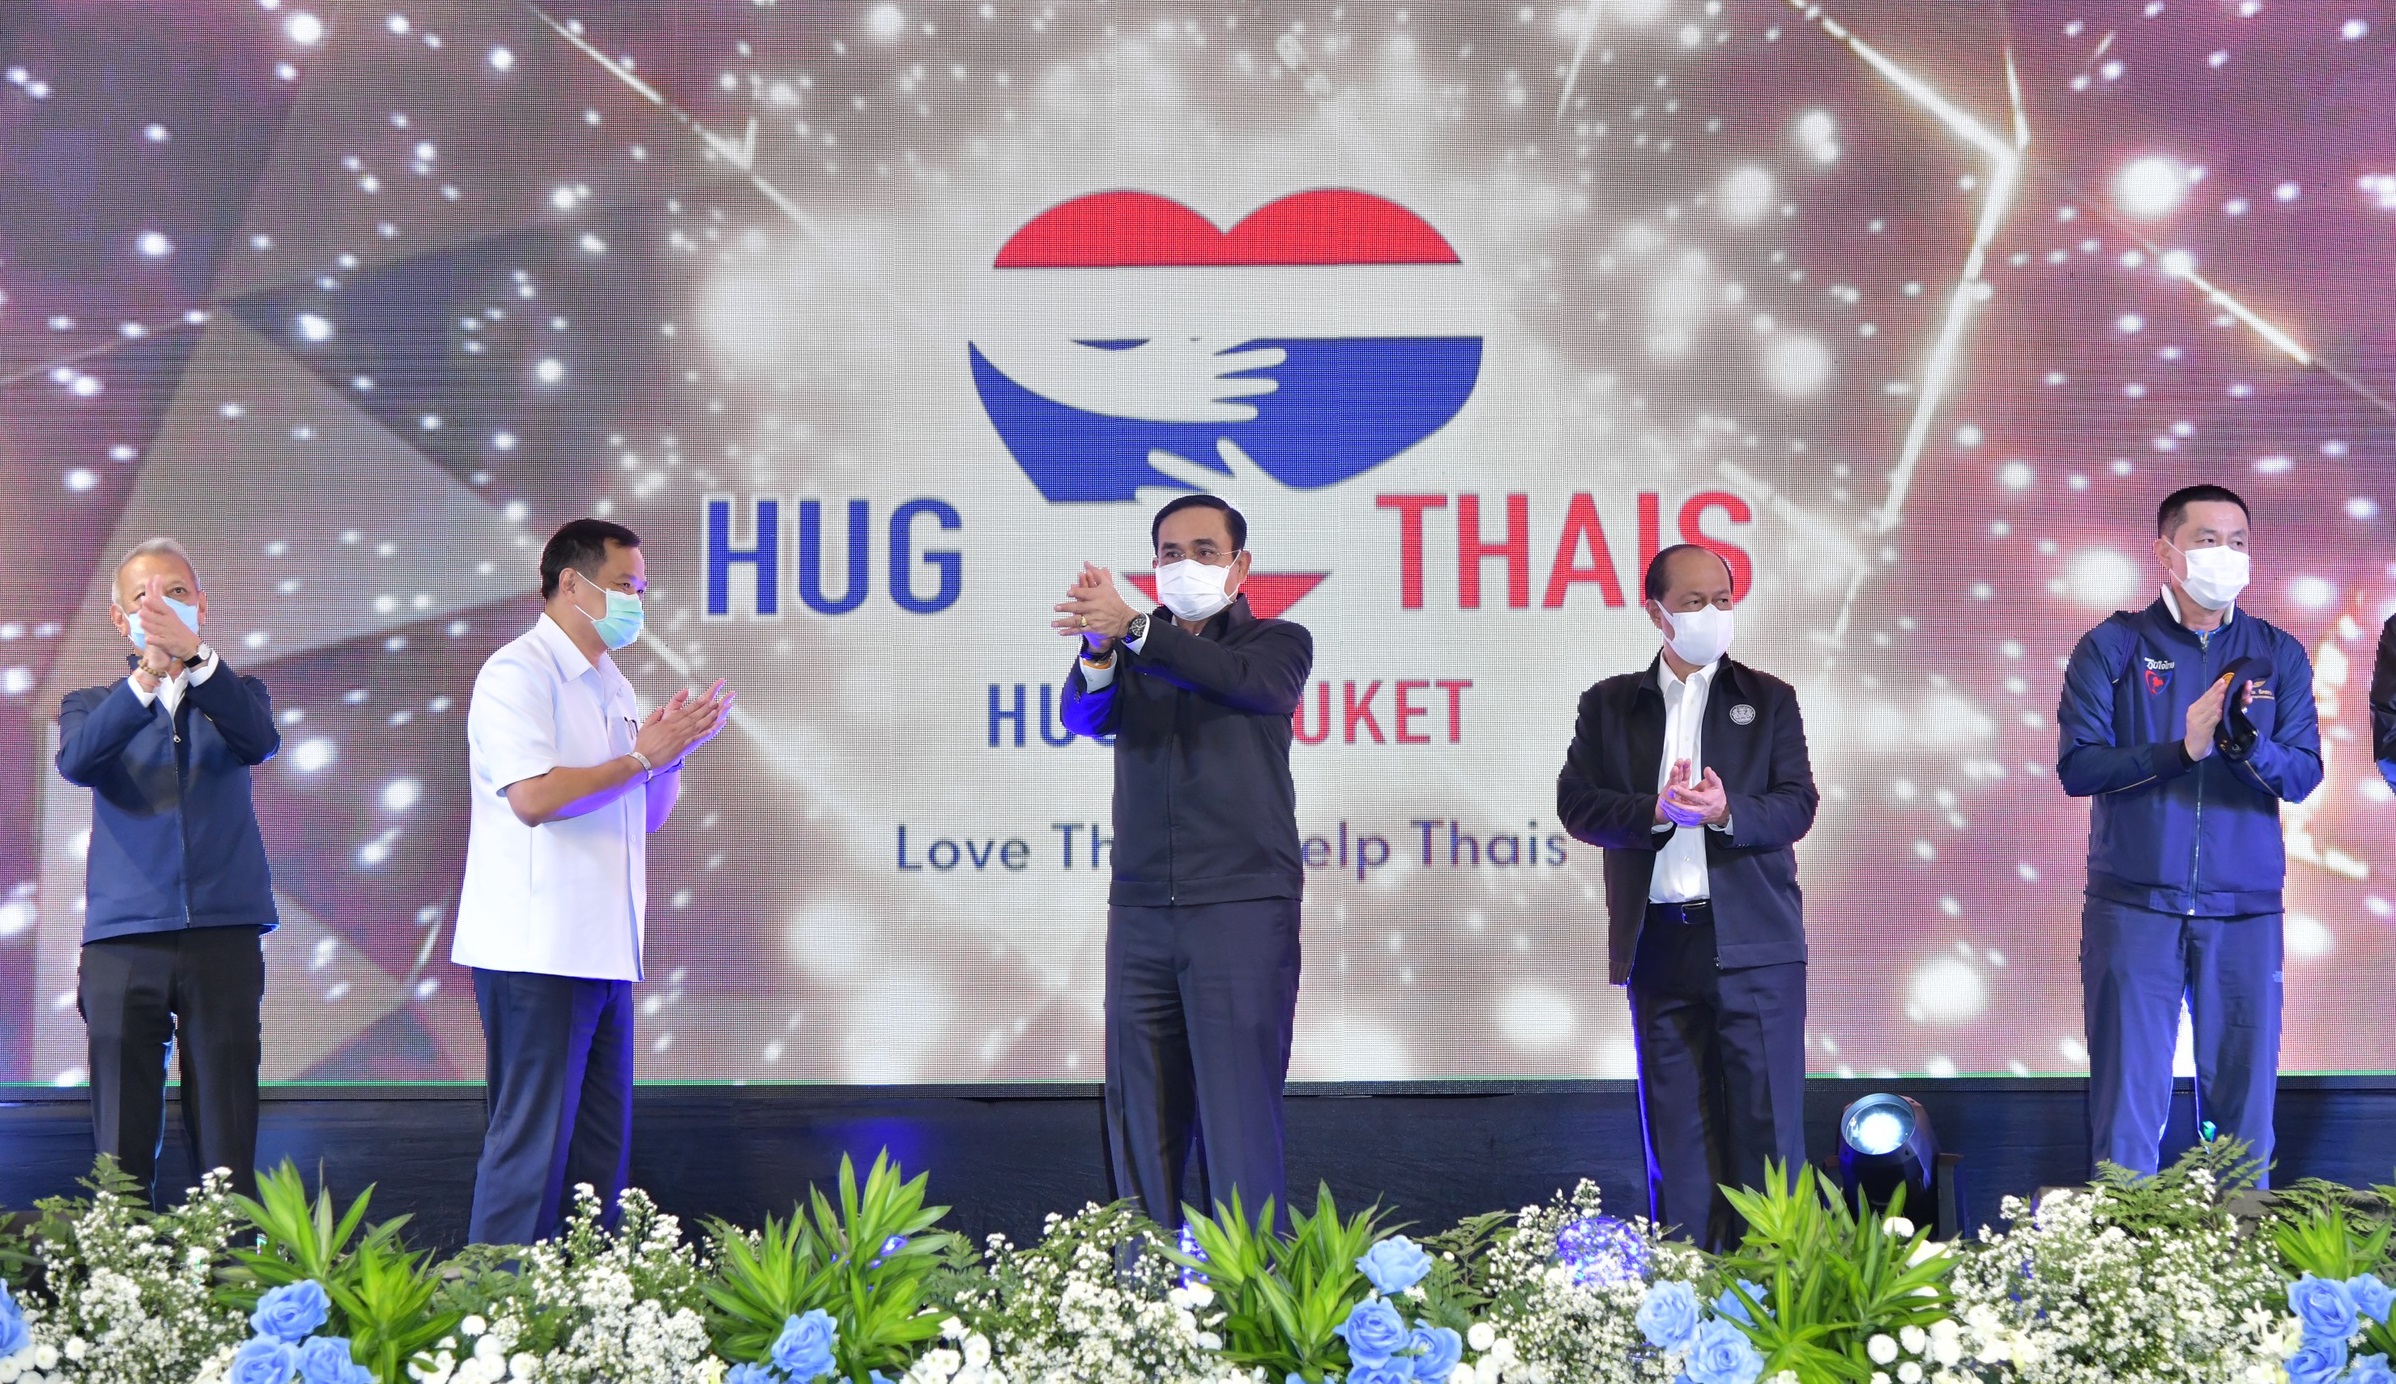 หอการค้าไทย เปิด “ฮักไทย ฮักภูเก็ต” คาดเม็ดเงินสะพัด 1.2 หมื่นล้านบาท – เศรษฐกิจ